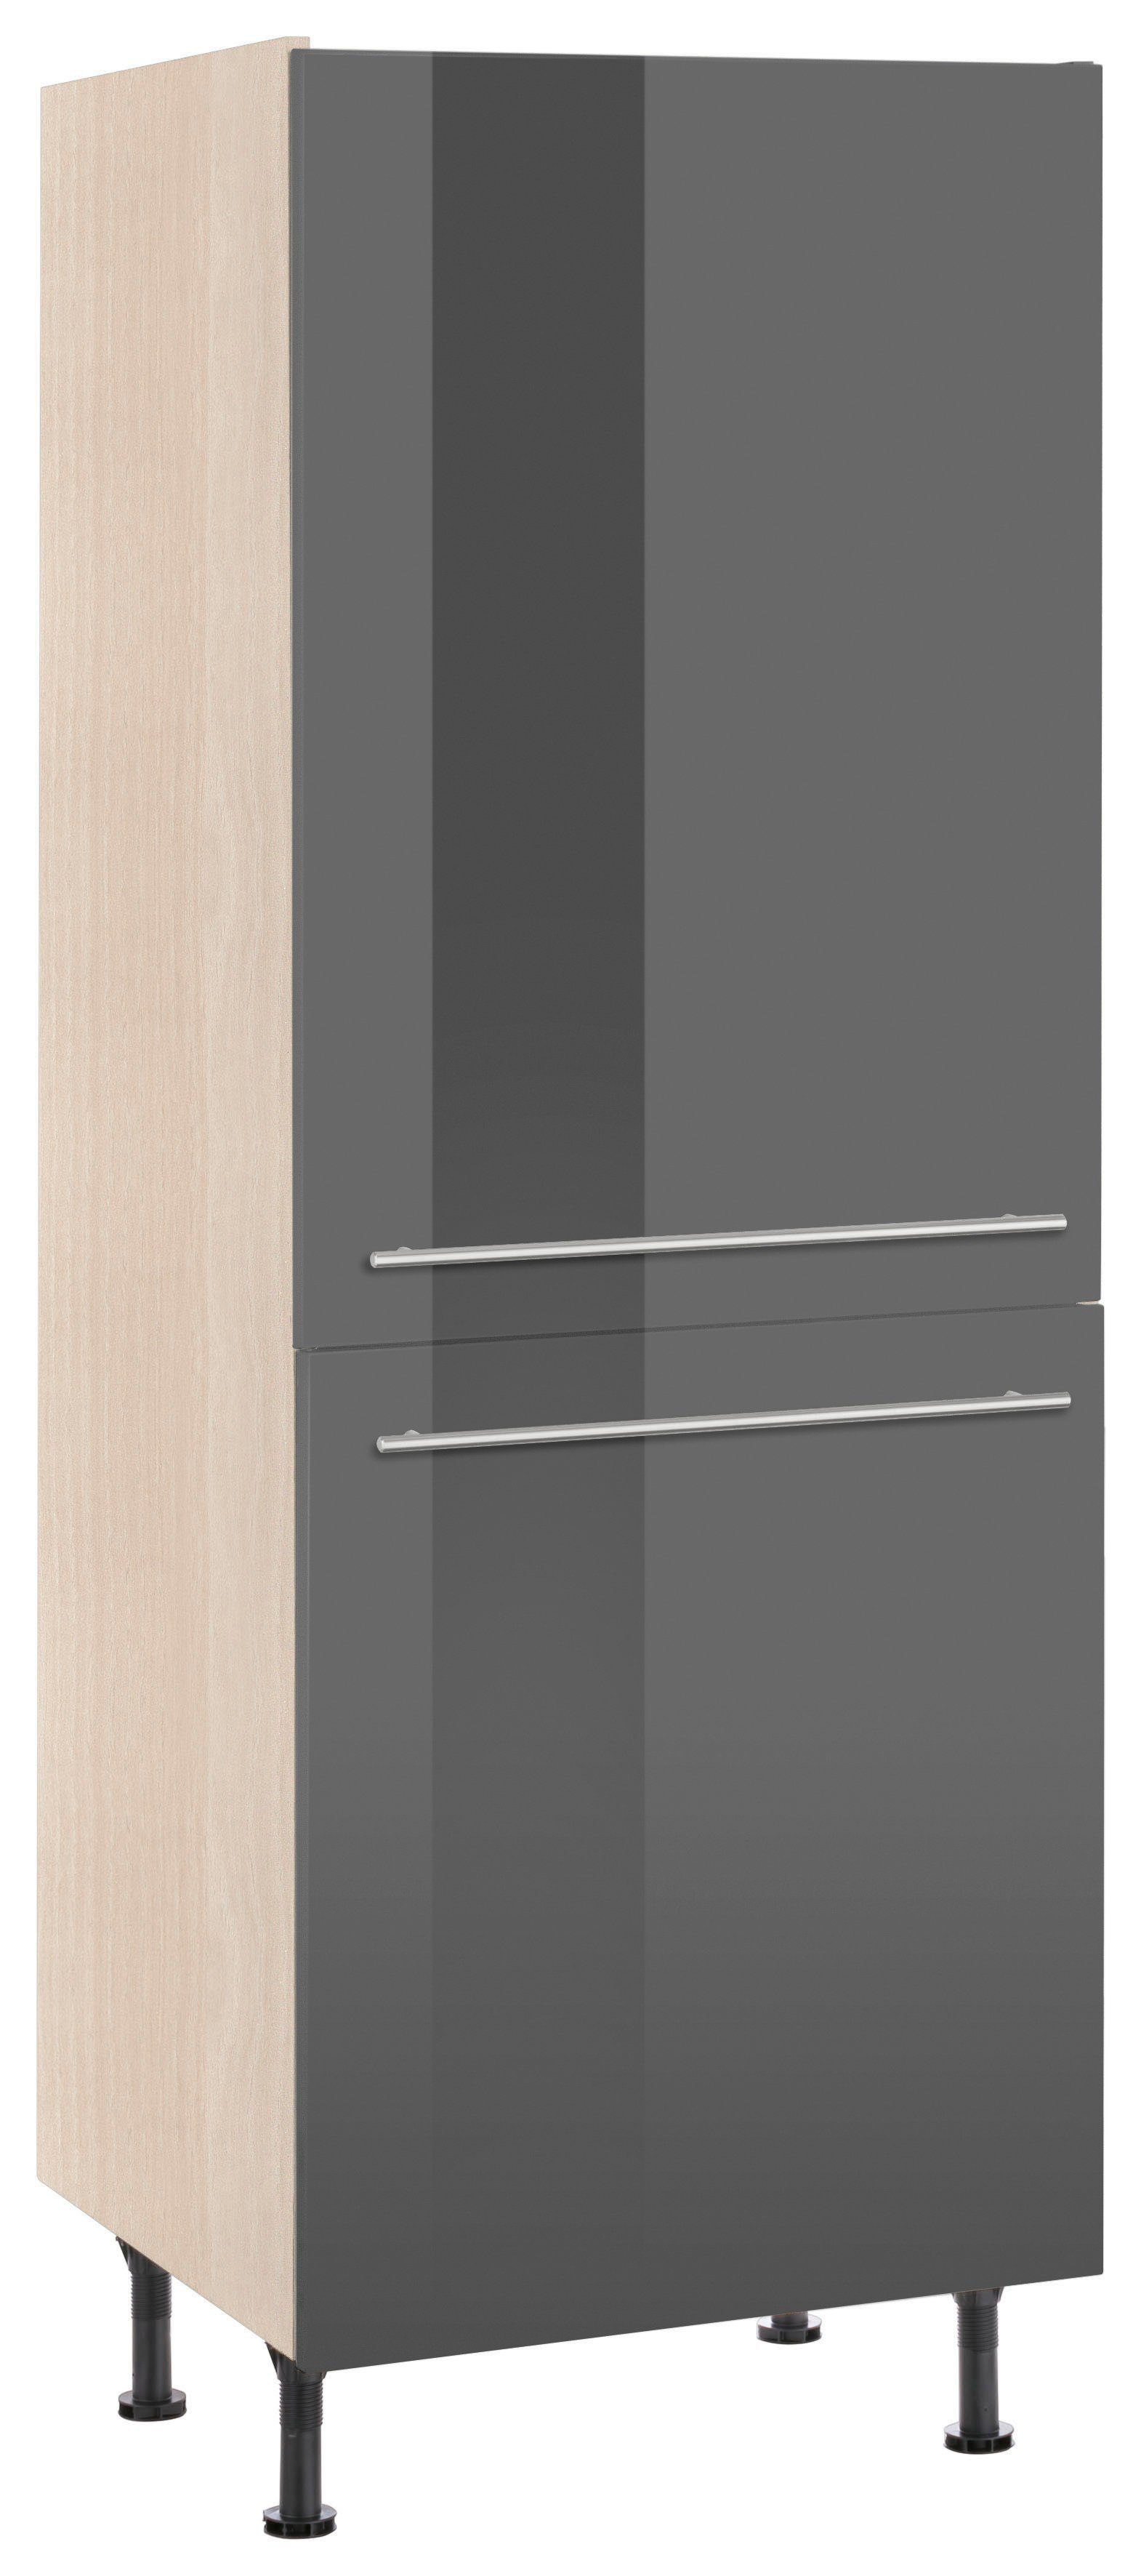 OPTIFIT Hochschrank Bern 60 cm breit, 176 cm hoch, mit höhenverstellbaren Stellfüßen grau Hochglanz/akaziefarben | akaziefarben